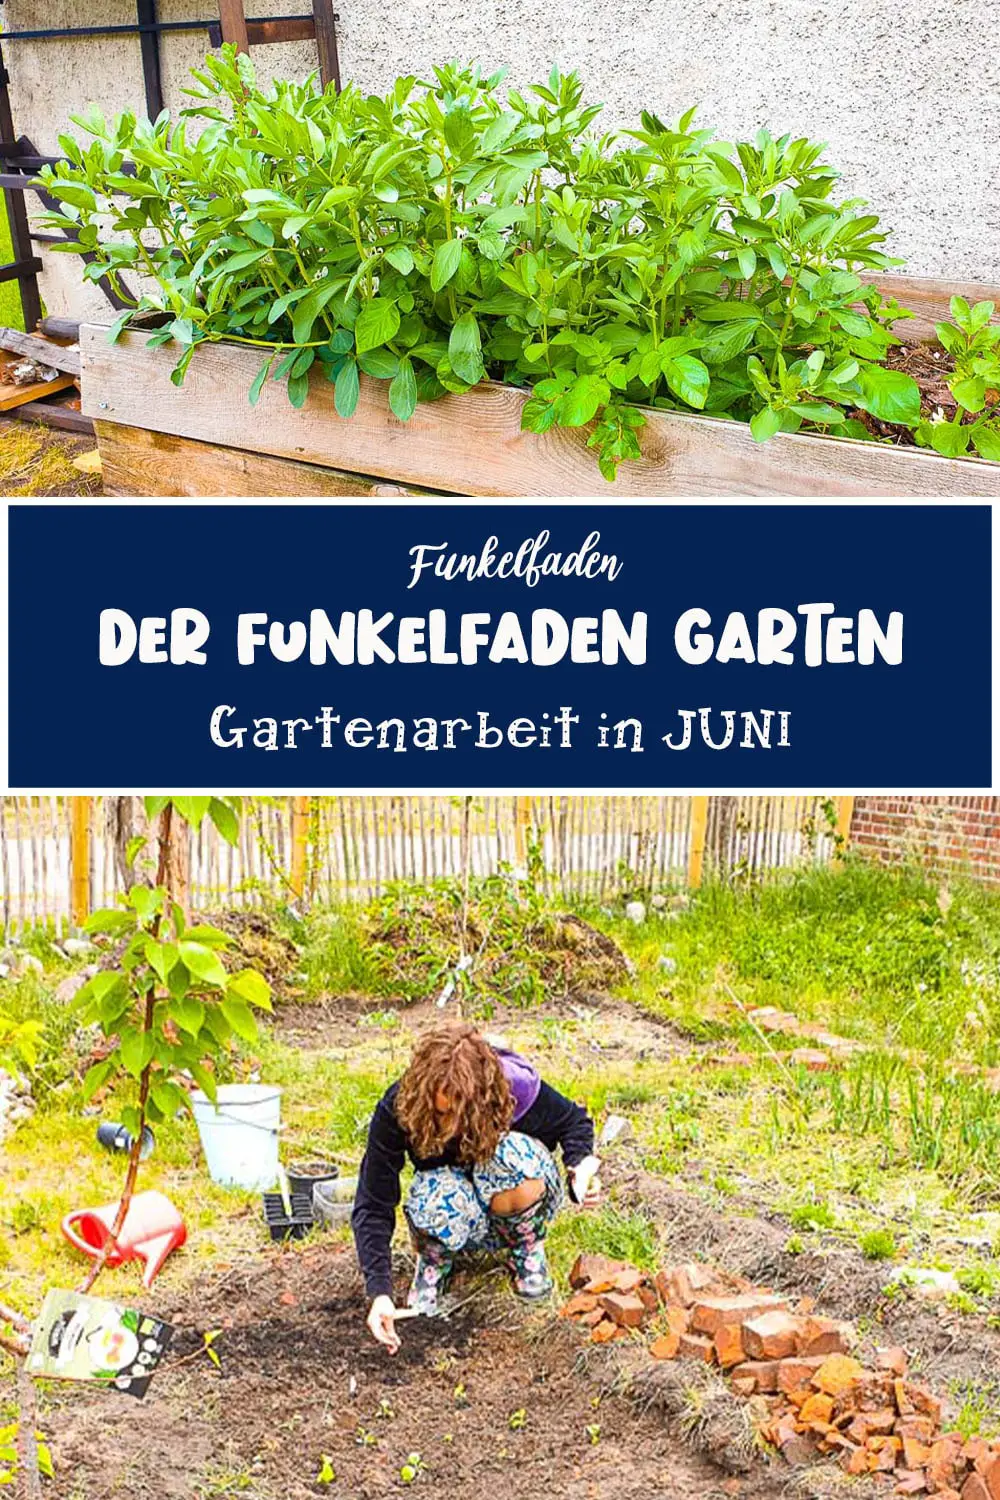 Der Funkelfaden Garten im Juni – Pflanzen & Mulchen